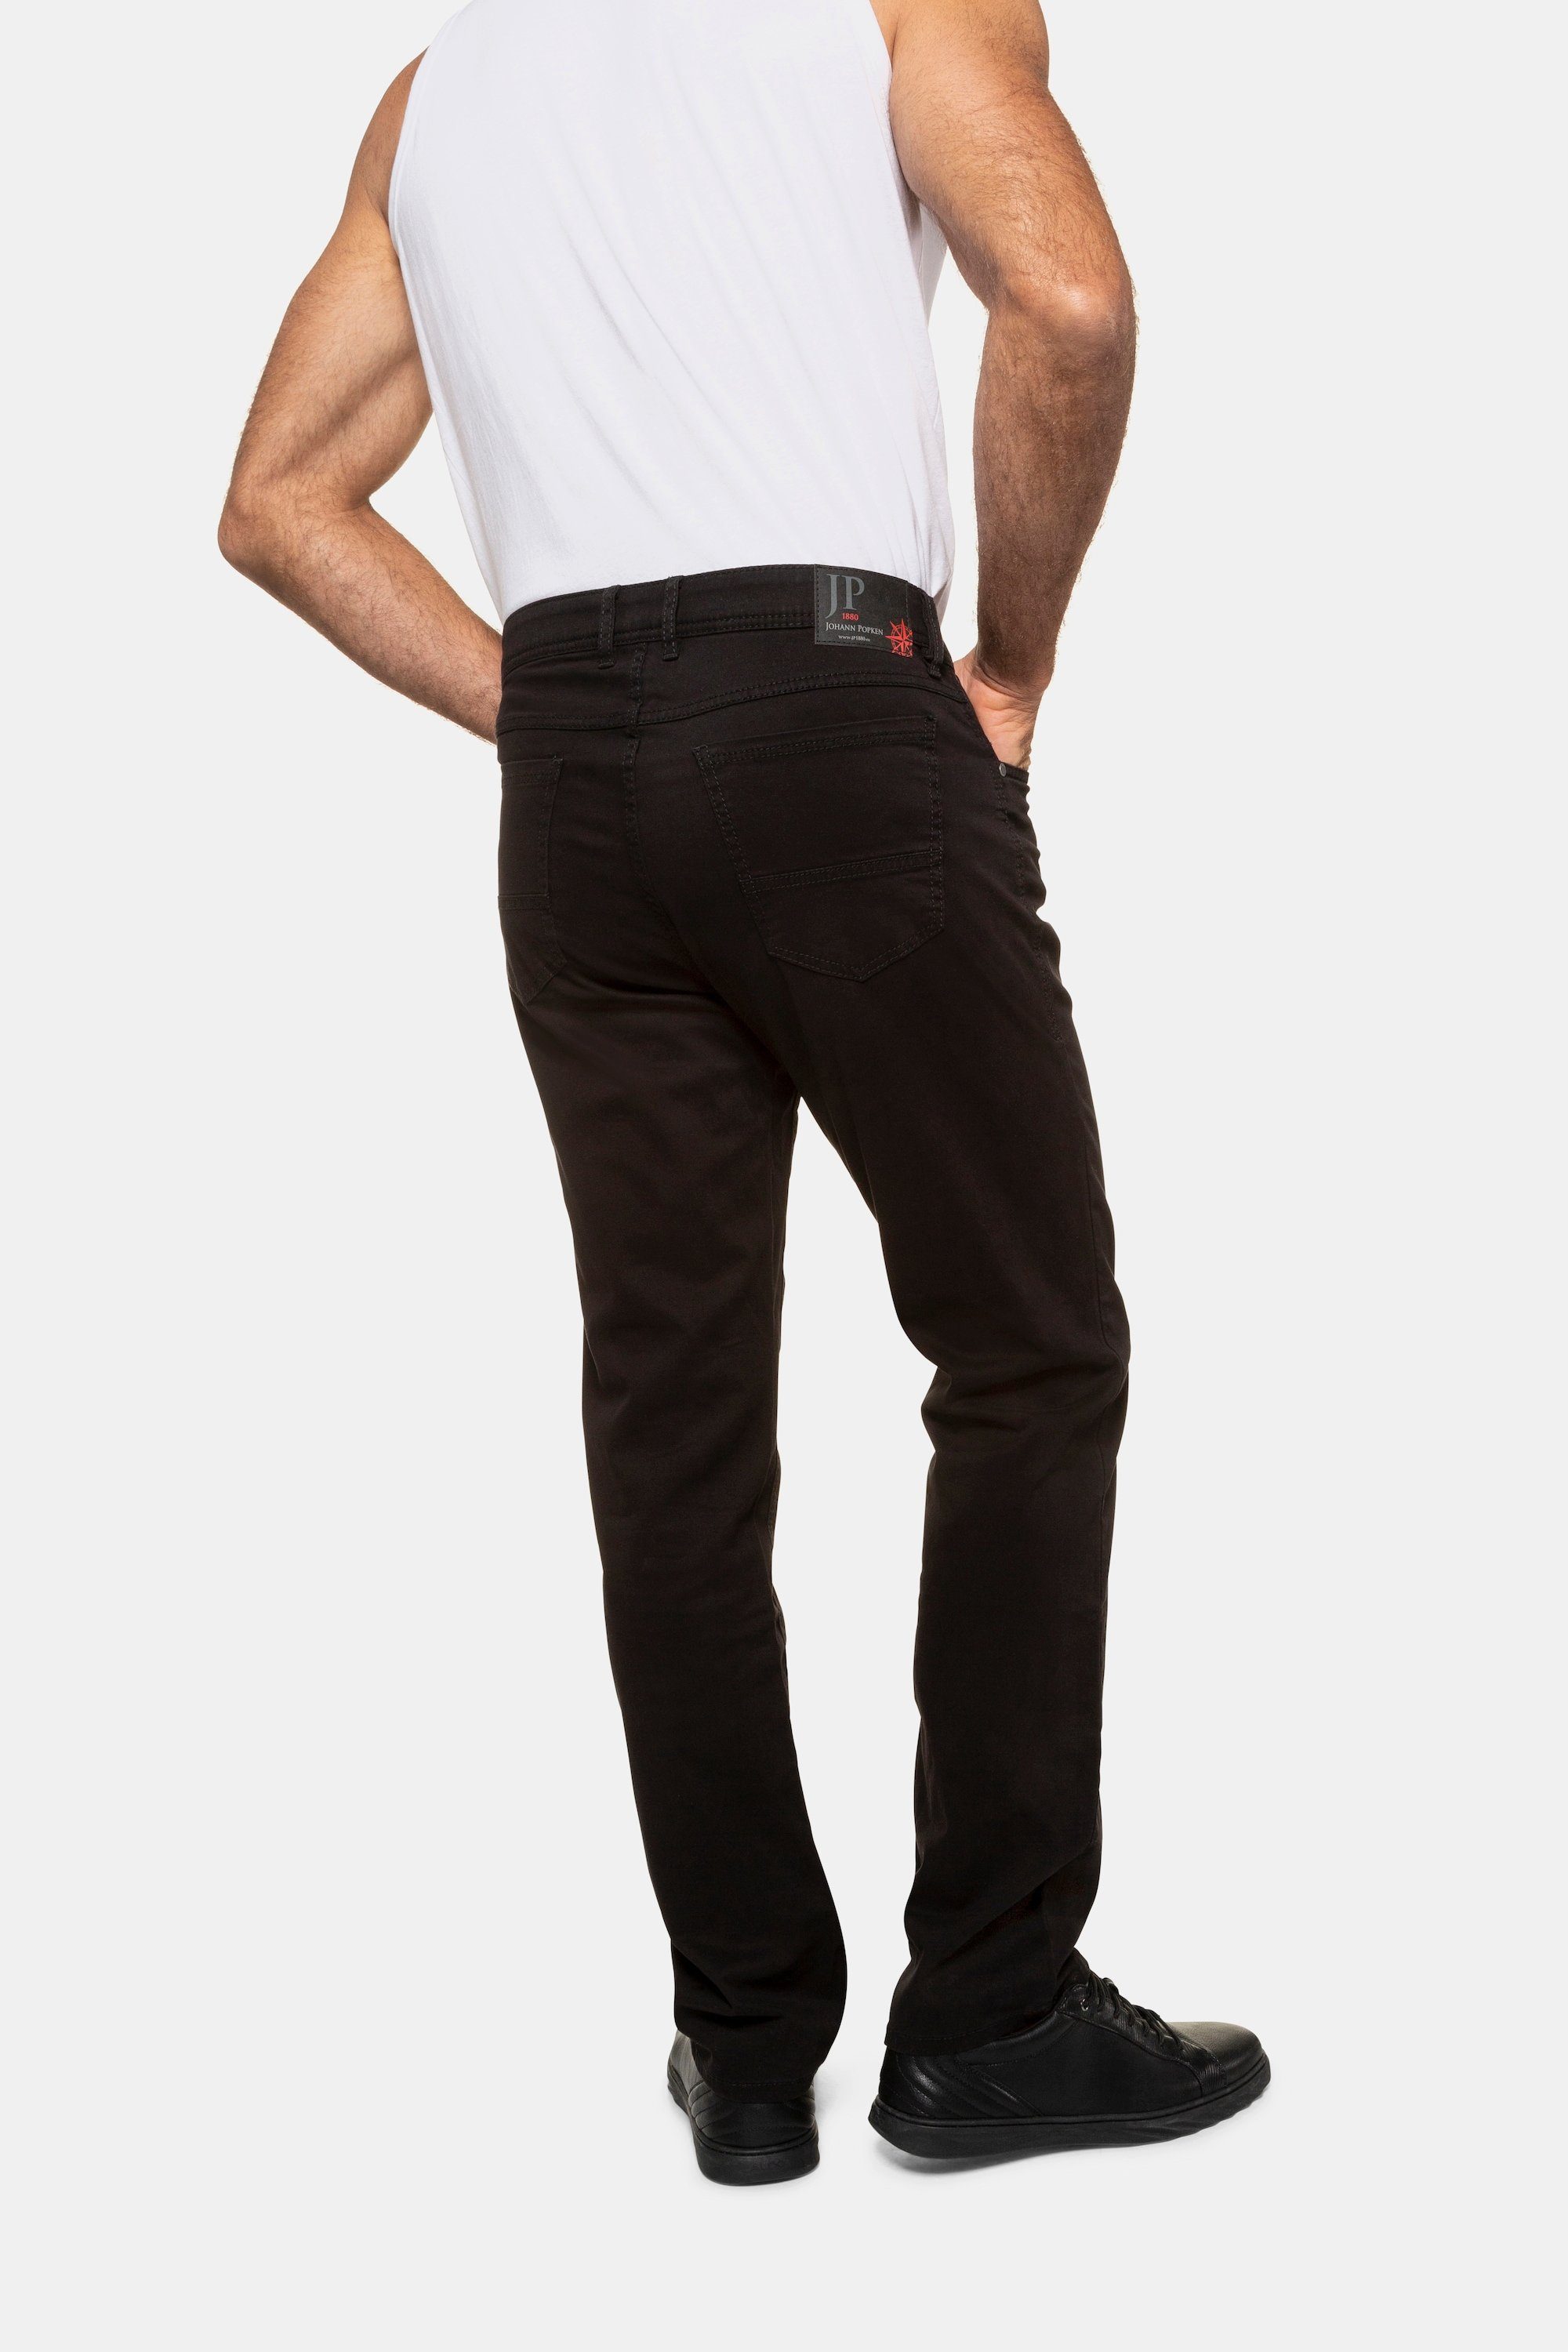 Bauchfit JP1880 Twillhose bis Größe N-70/U-35 5-Pocket-Jeans schwarz